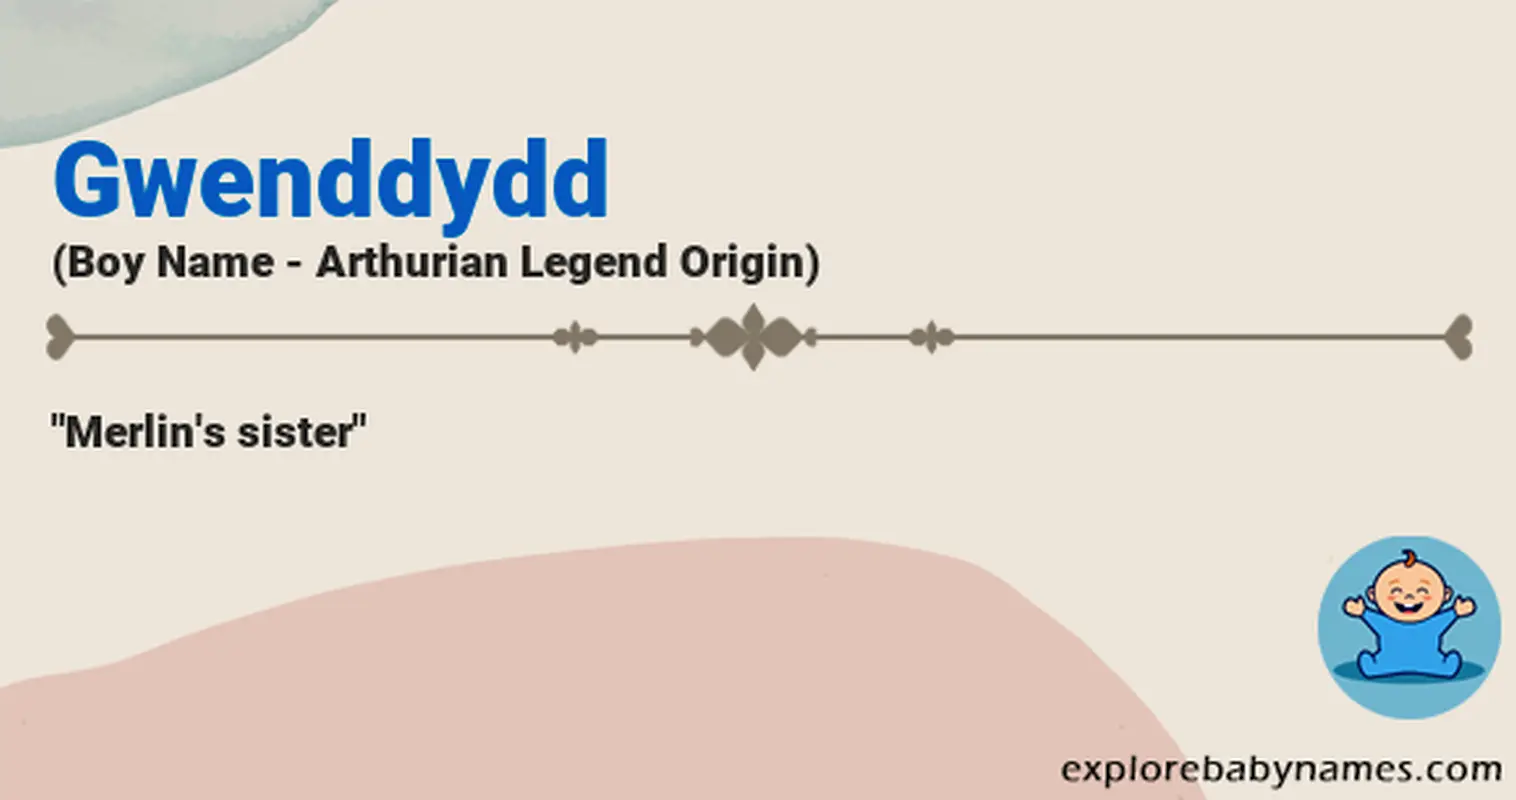 Meaning of Gwenddydd